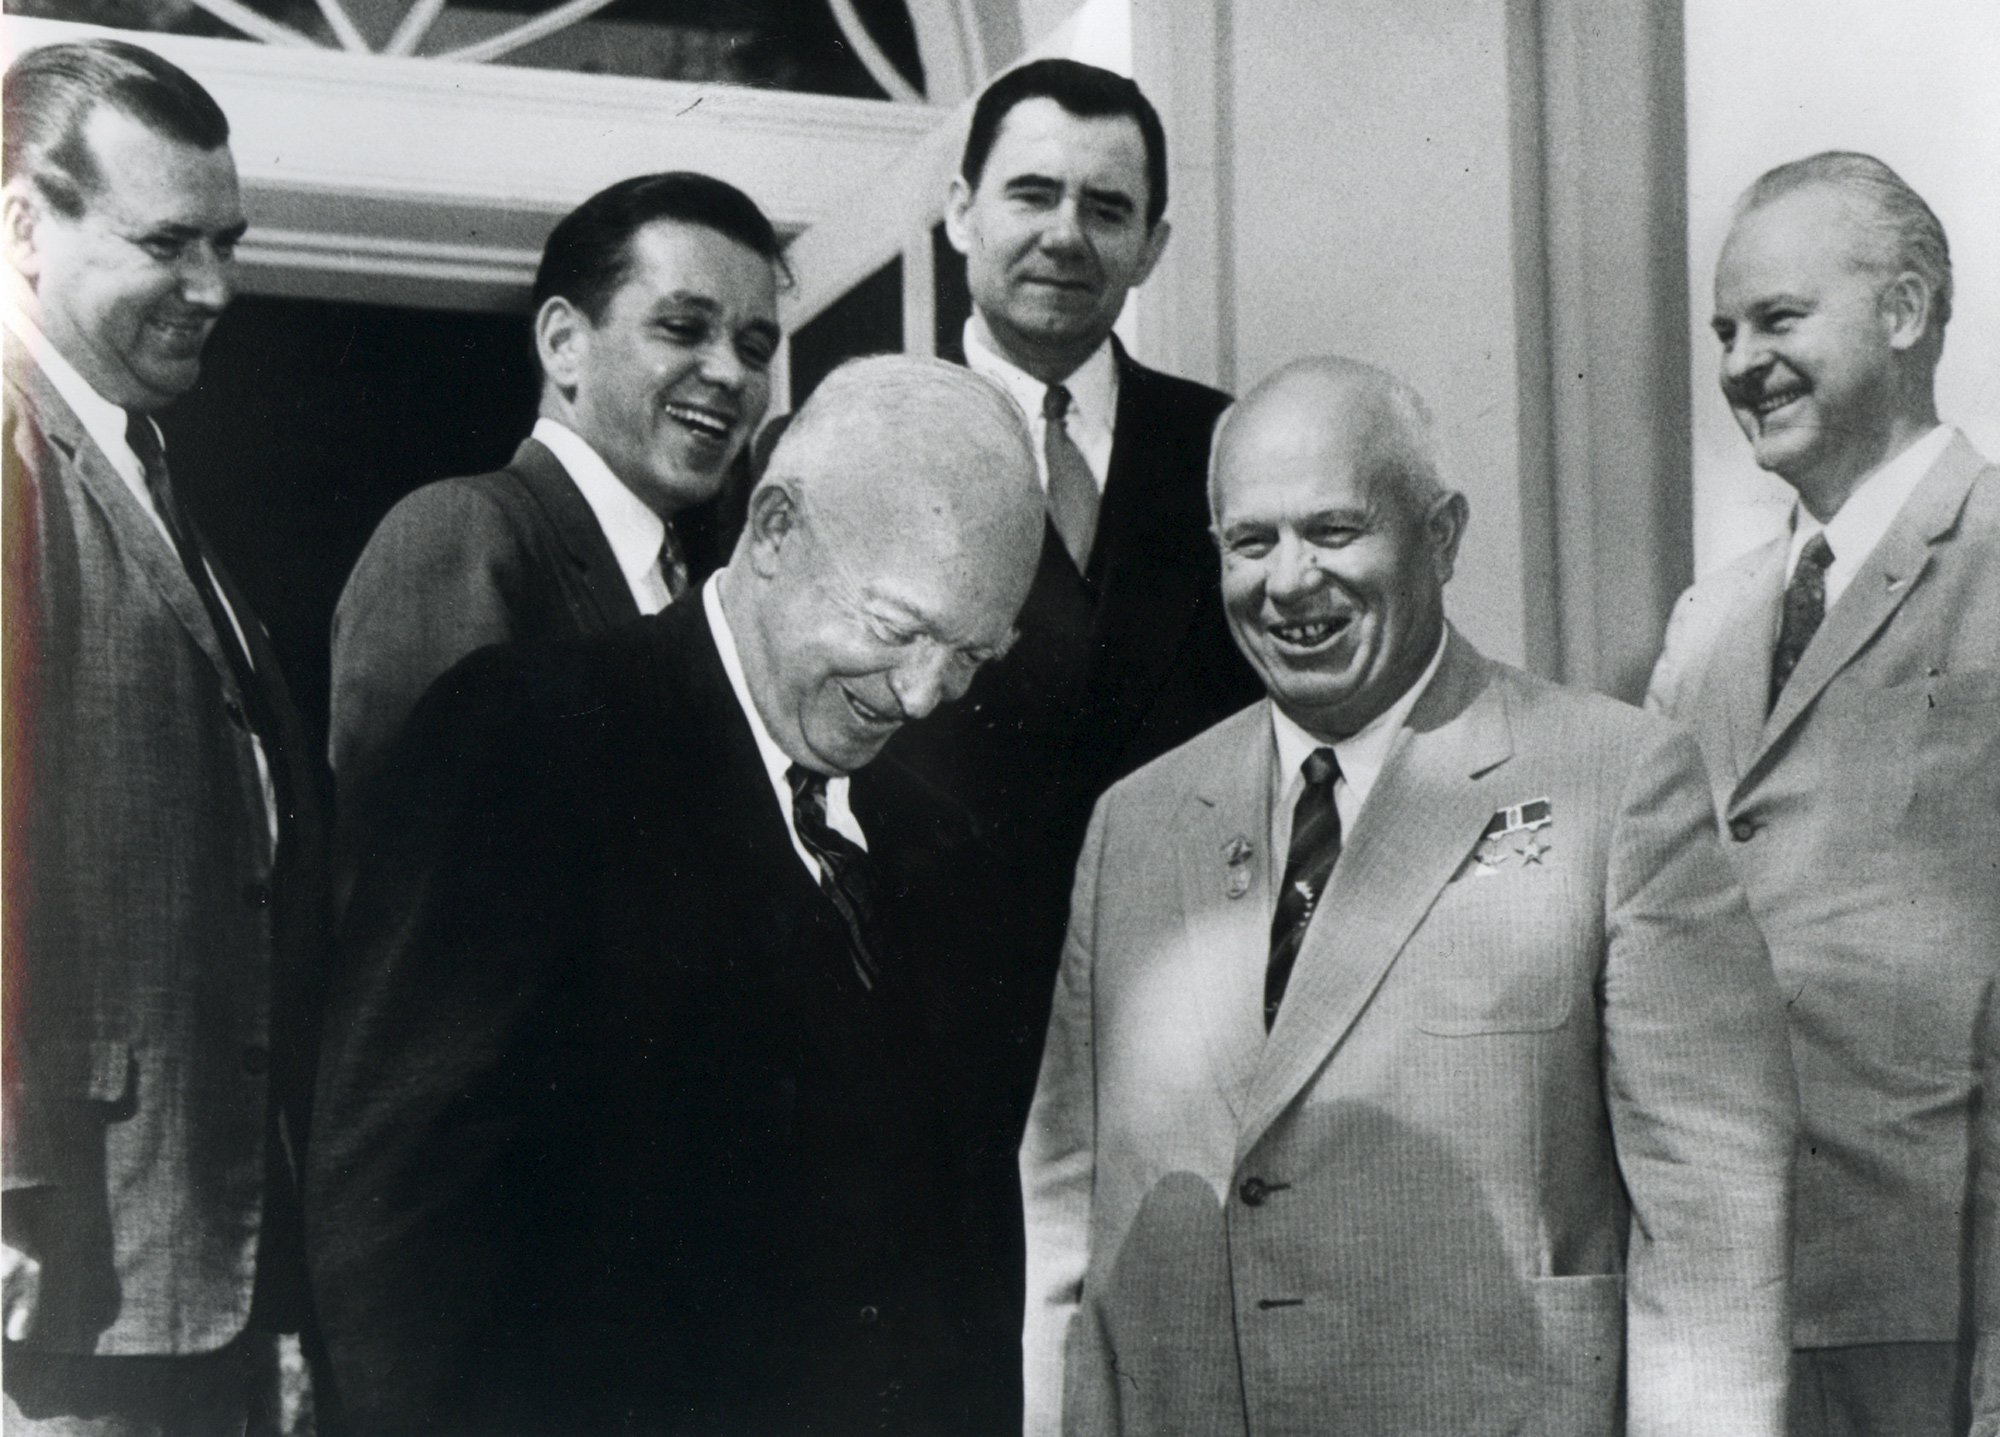 Eisenhower and Khrushchev meeting in Geneva